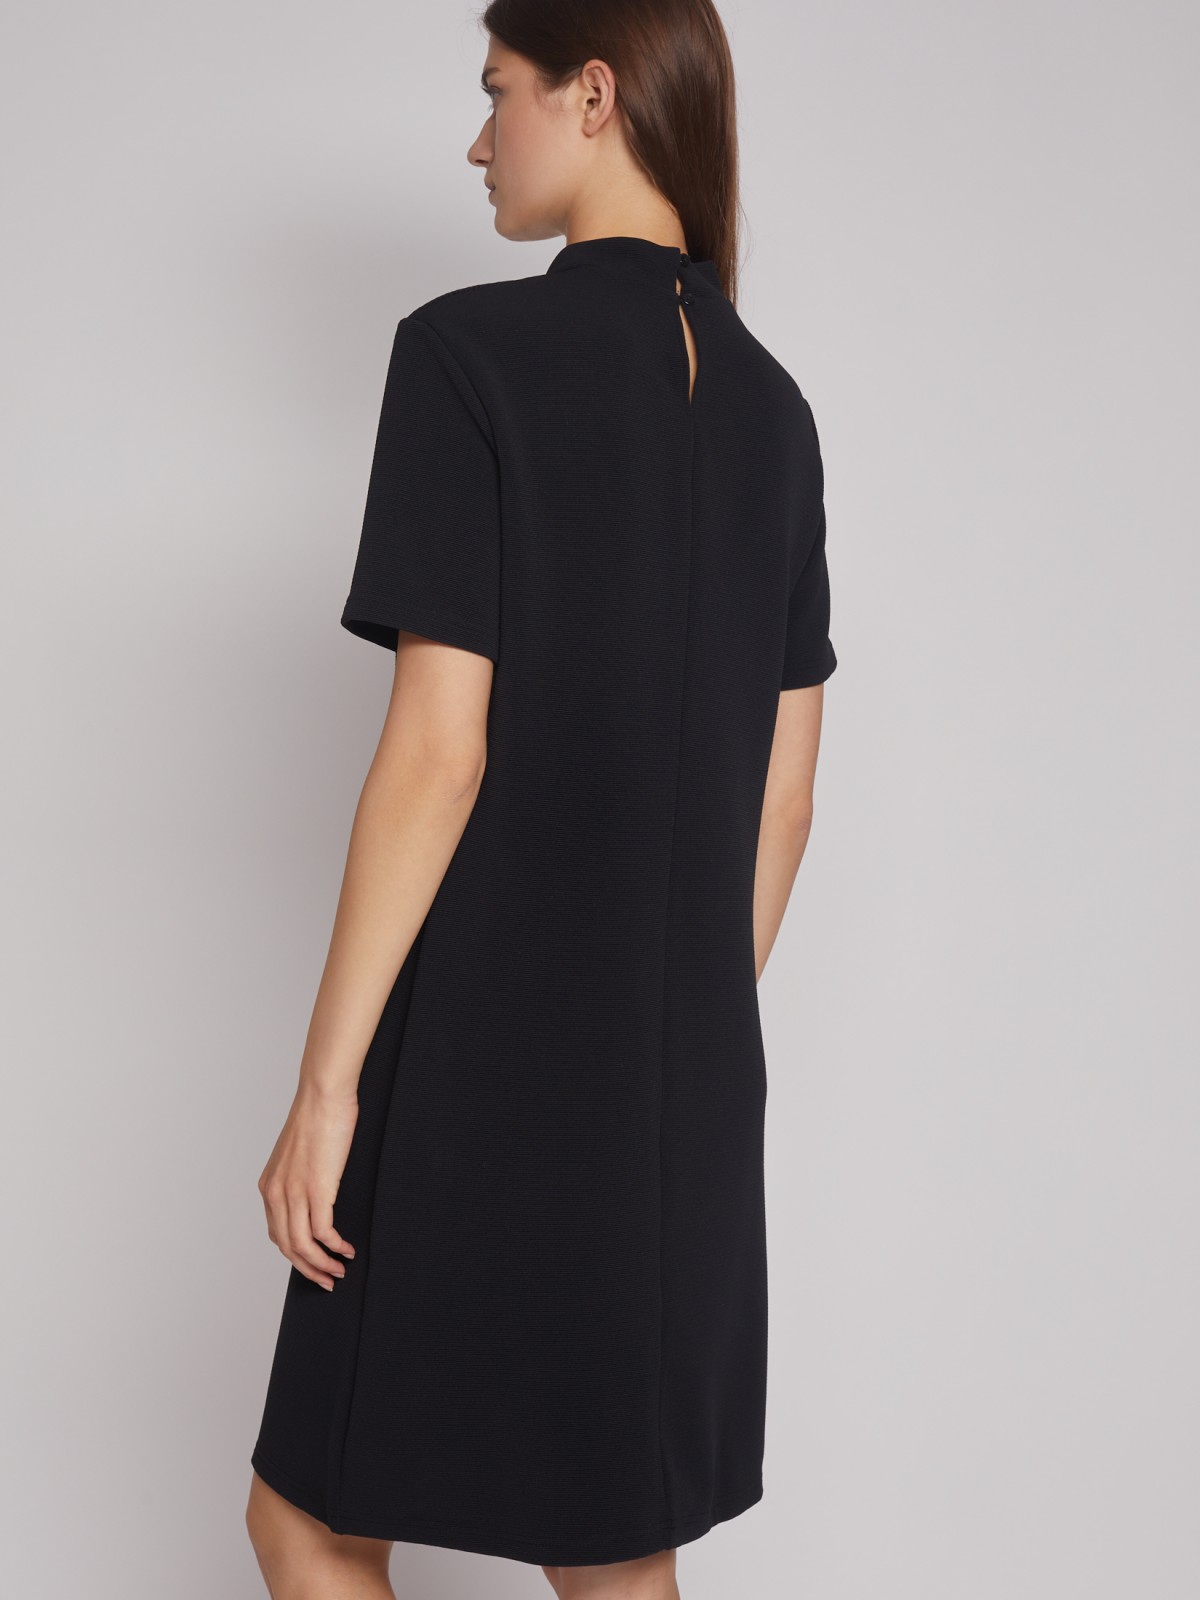 Платье с коротким рукавом zolla 22232814Y102, цвет черный, размер XS - фото 6